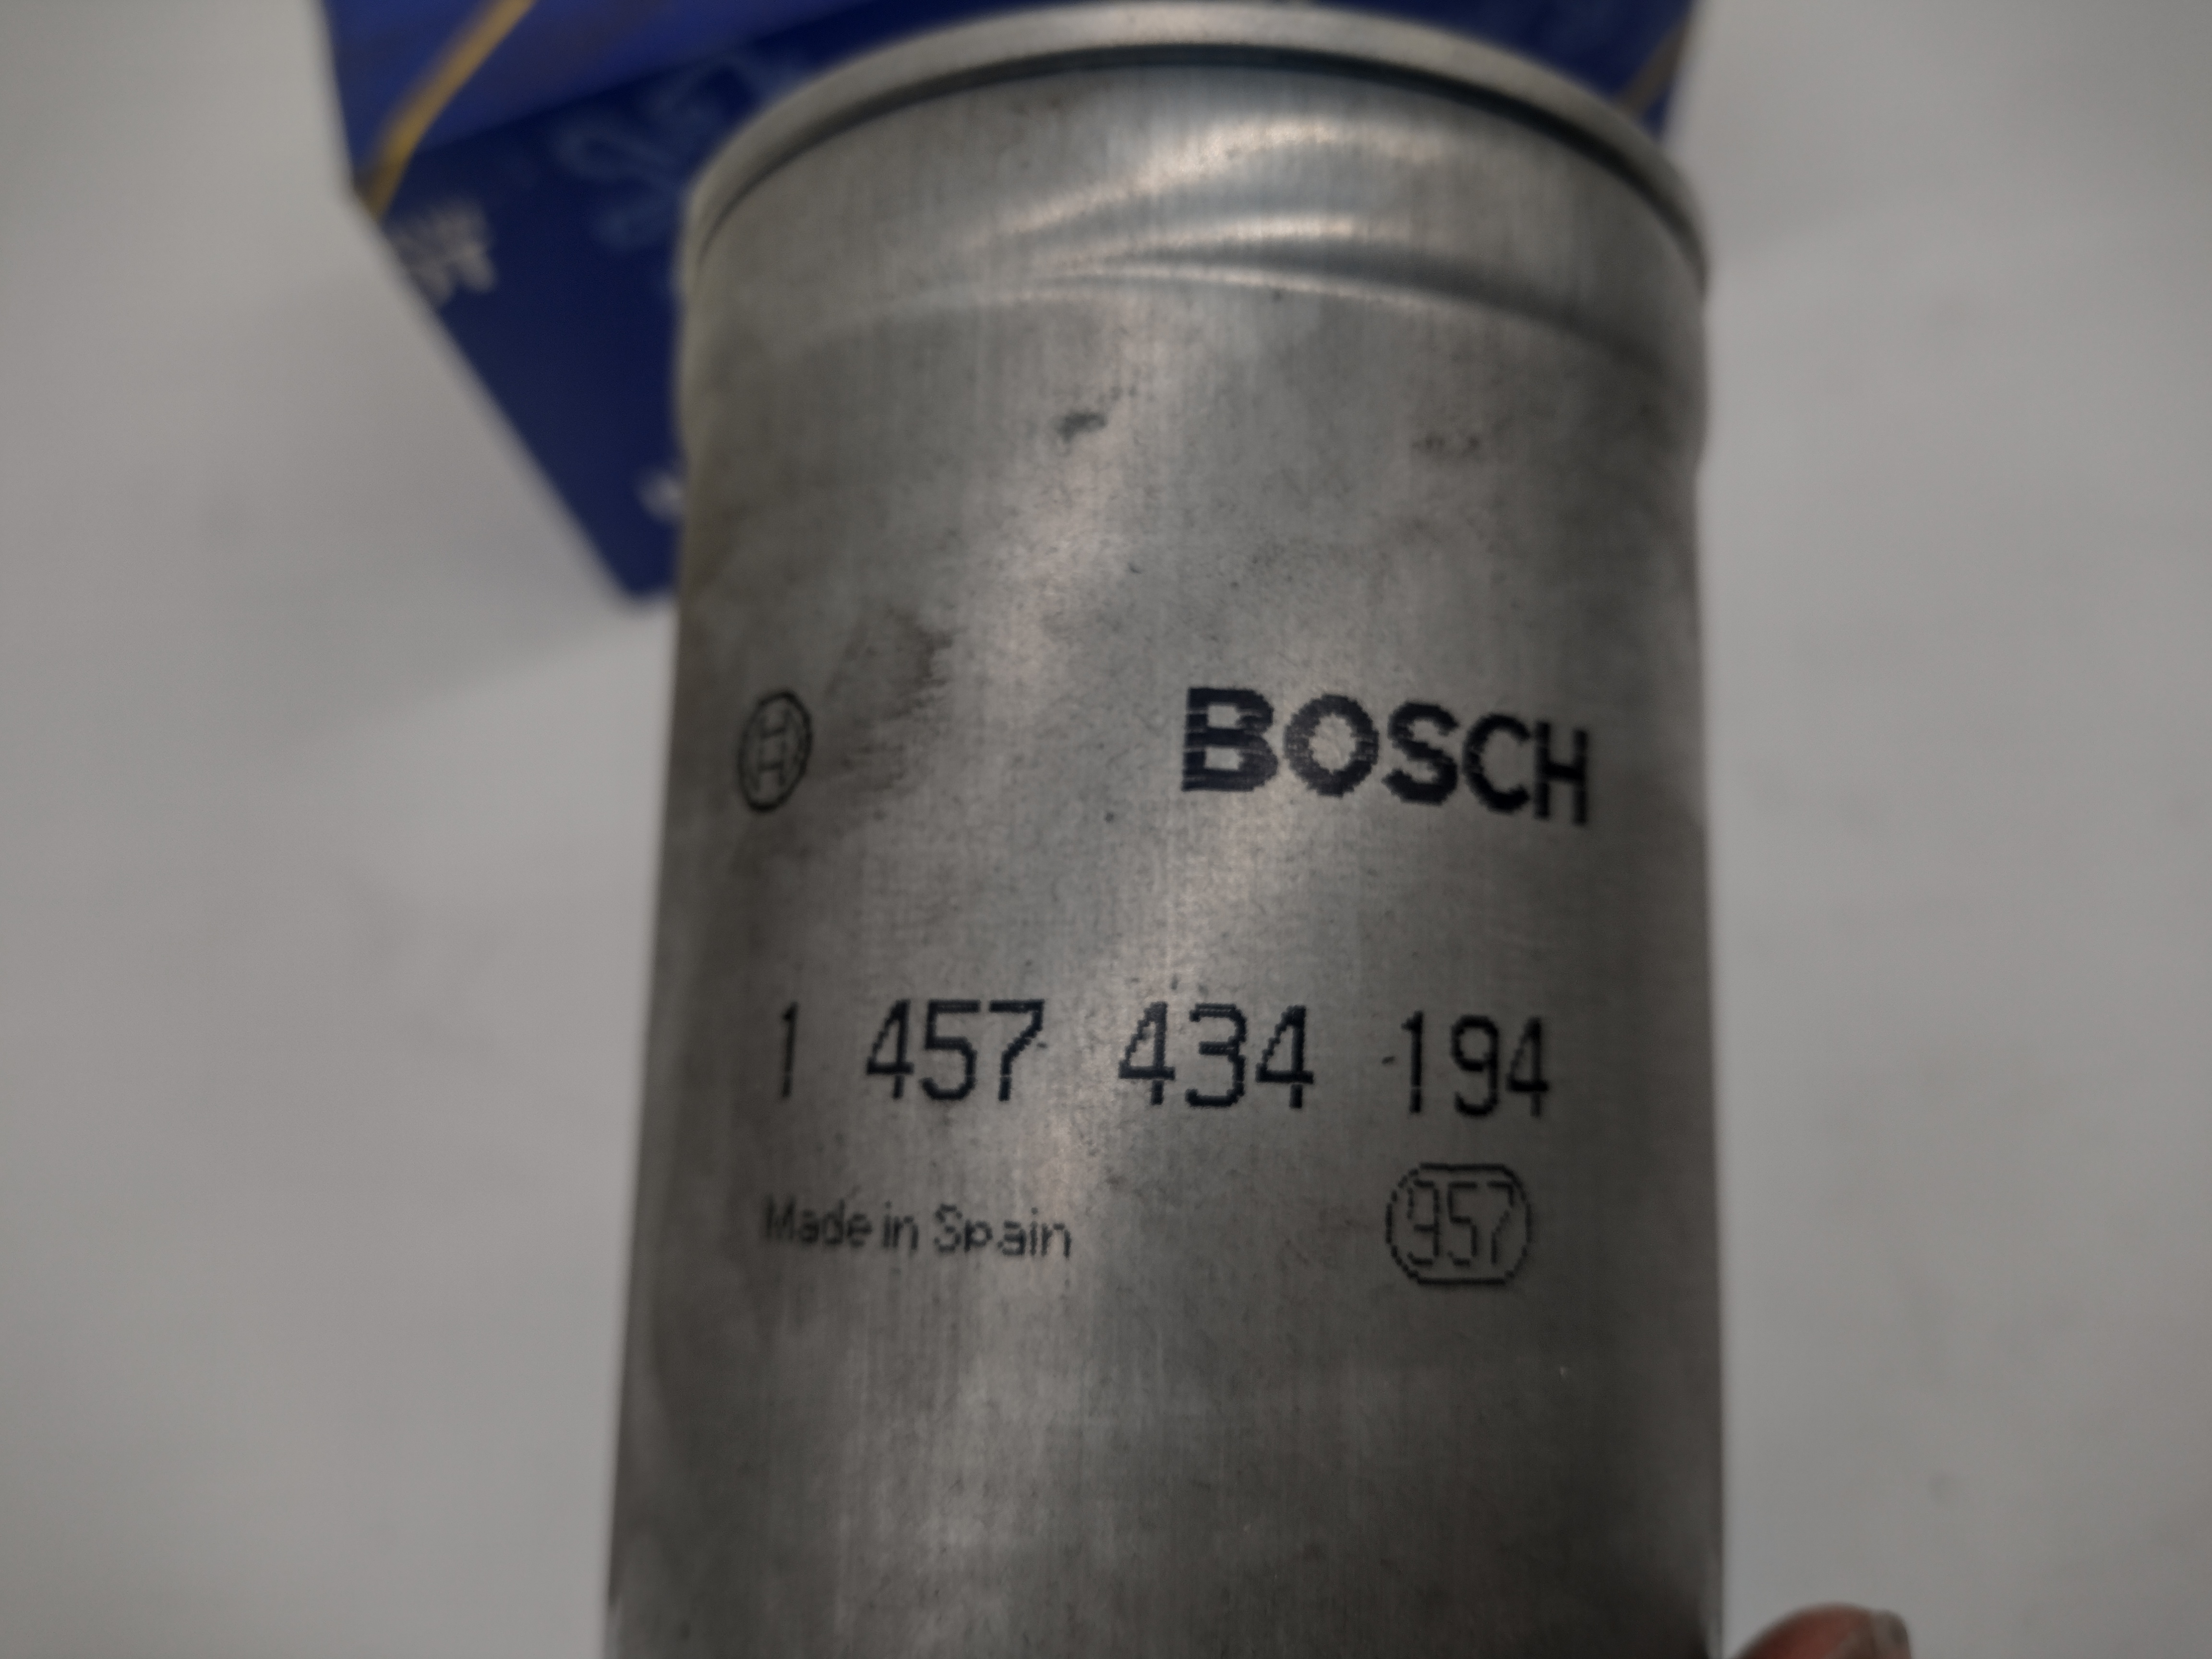 Peugeot Kraftstofffilter Dieselfilter 190662 Bosch 1457434194 NEU NOS NEW